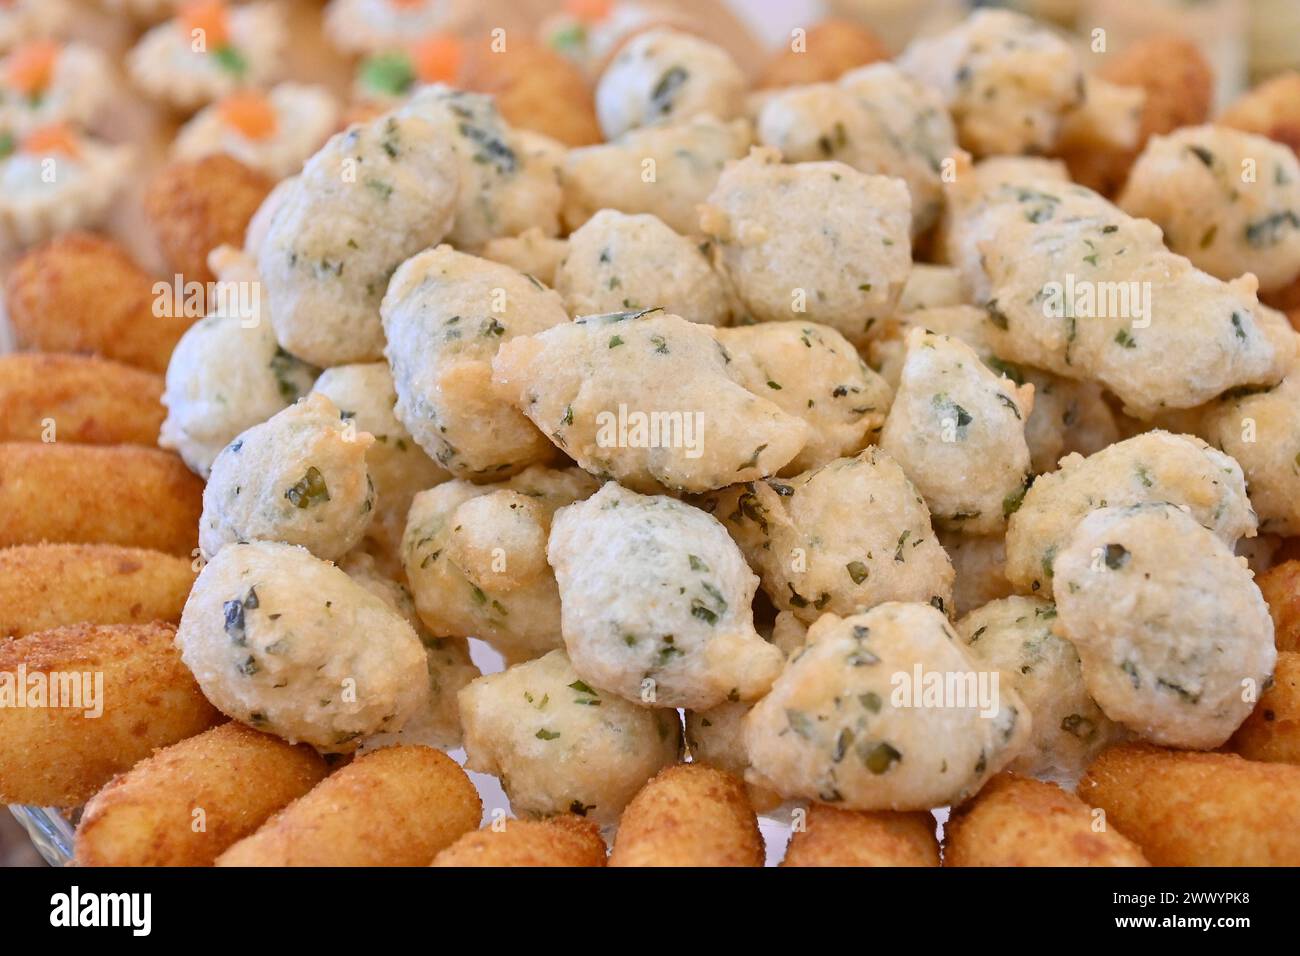 Le buffet de mariage propose une large sélection de plats frits, notamment des zeppoles, des croquettes de pommes de terre et de la mozzarella frite. Banque D'Images